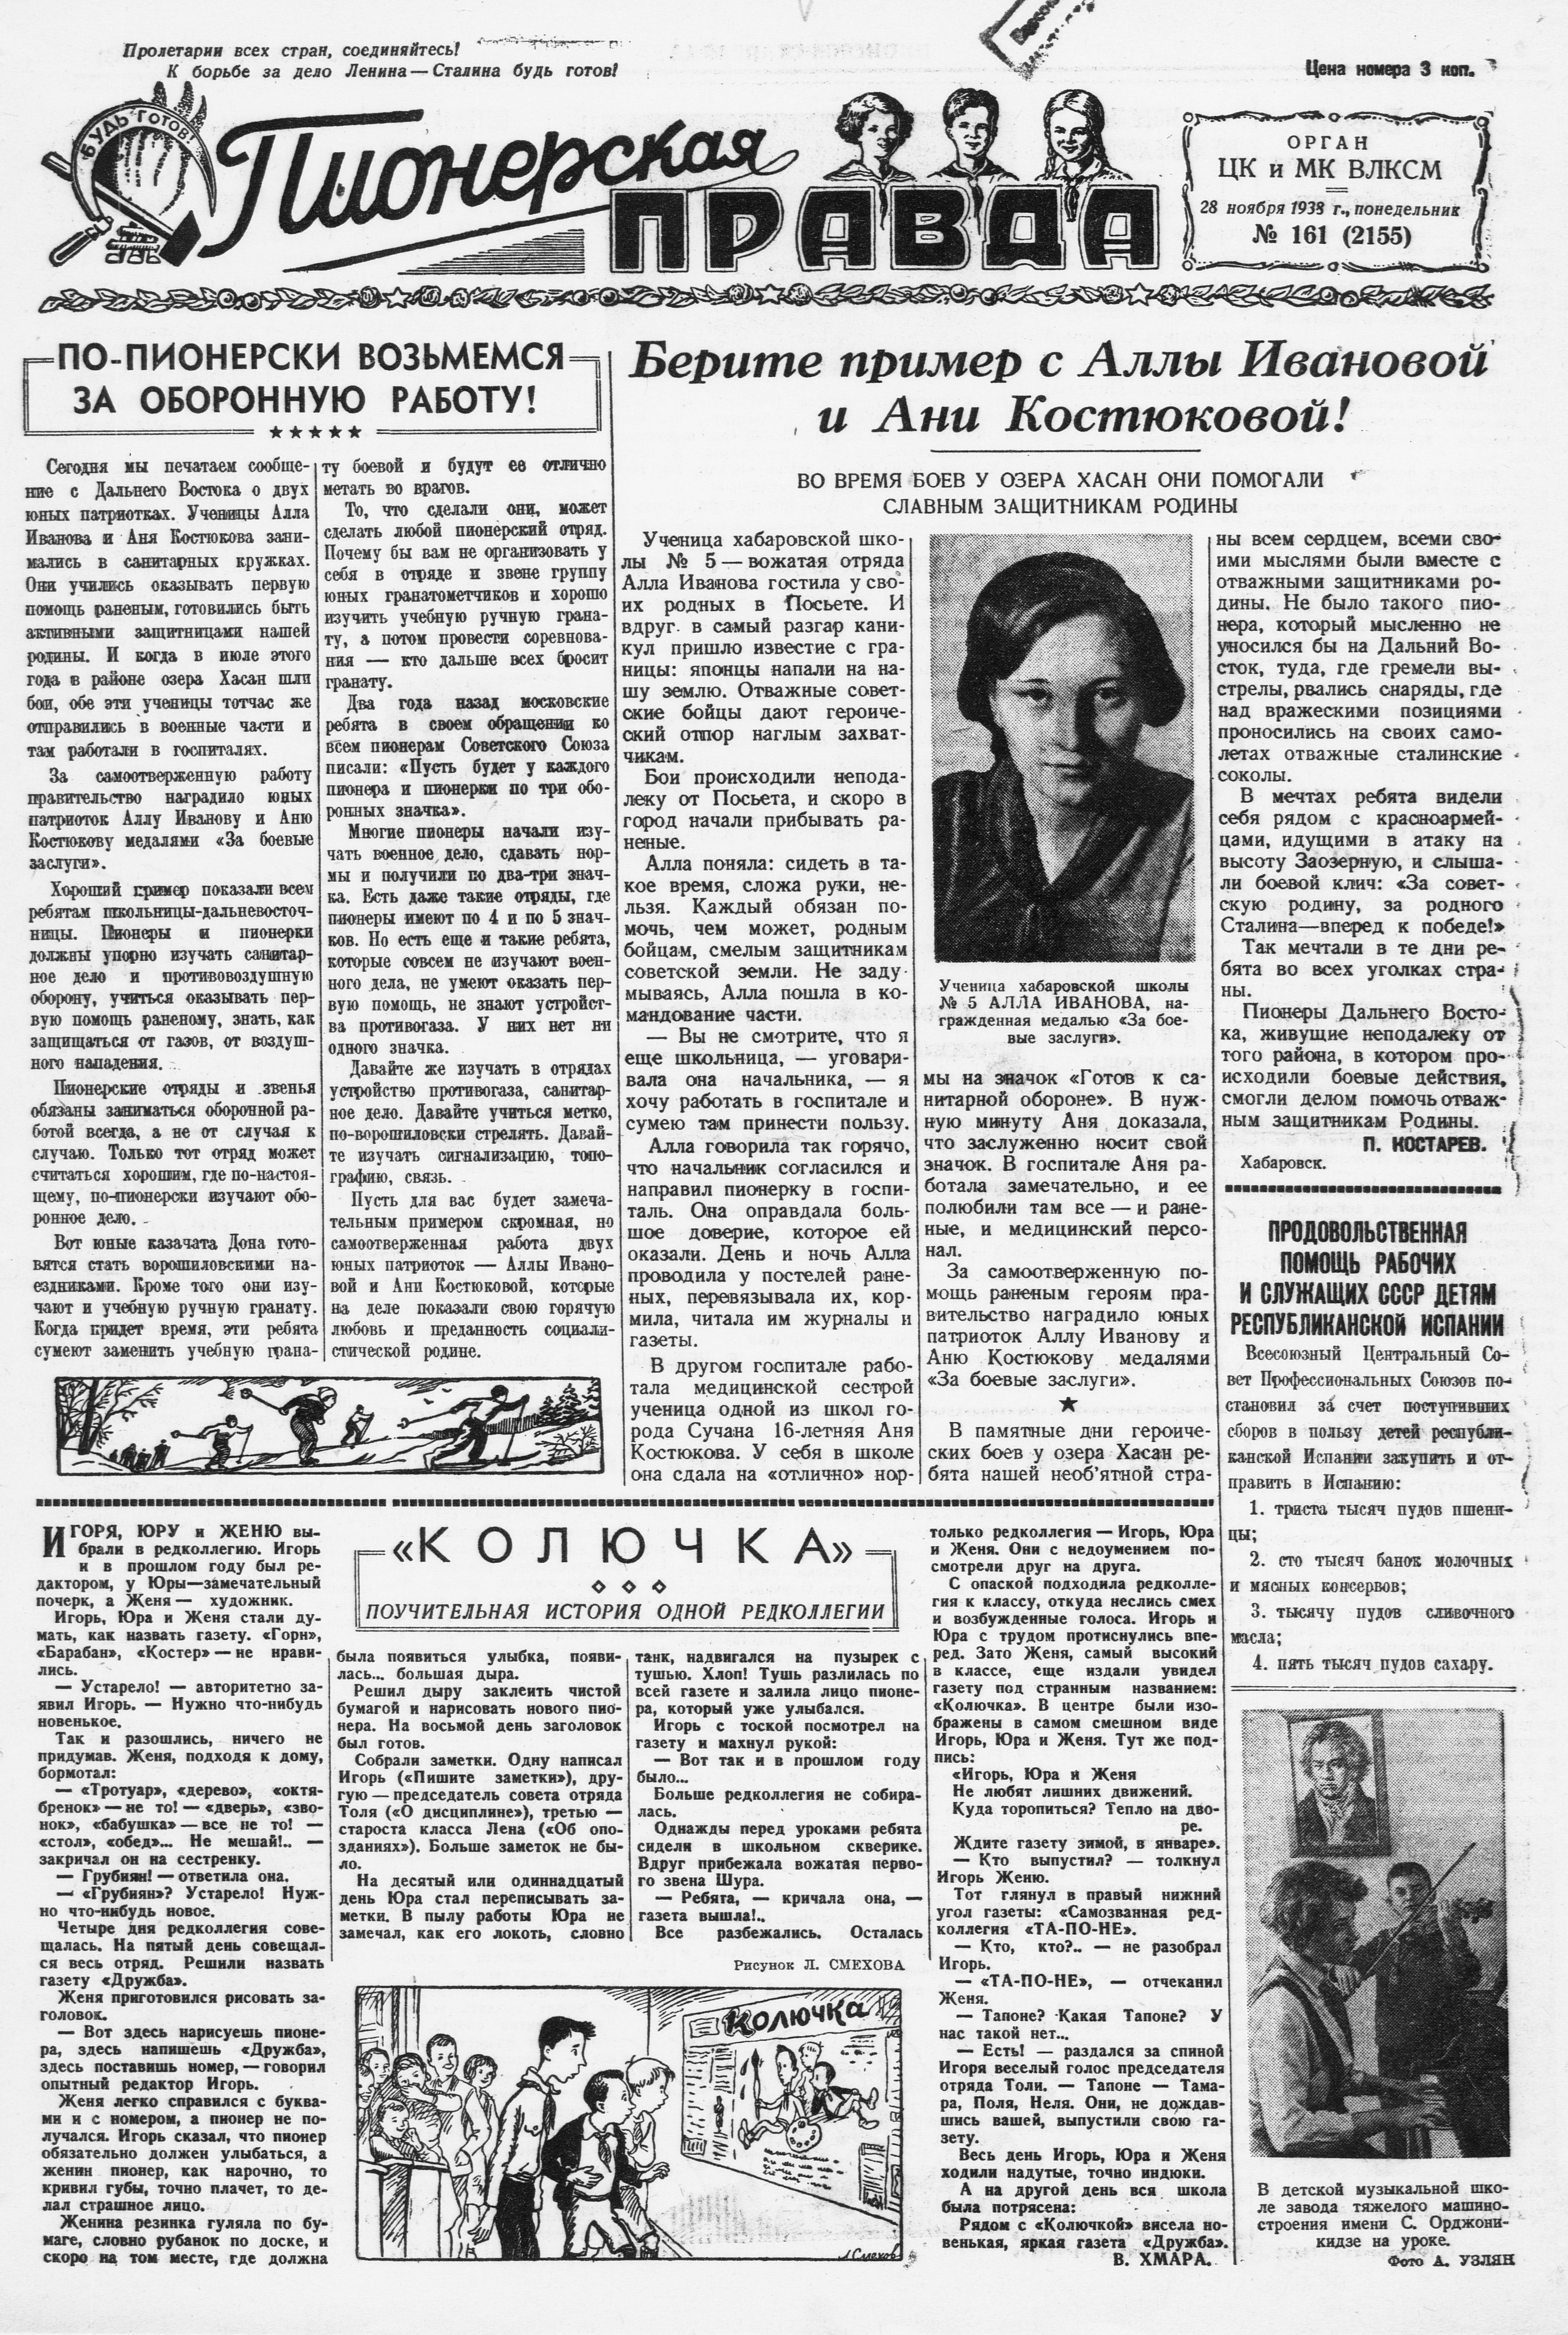 Пионерская правда. 1938. № 161 (2155): Орган ЦК и МК ВЛКСМ - 1938